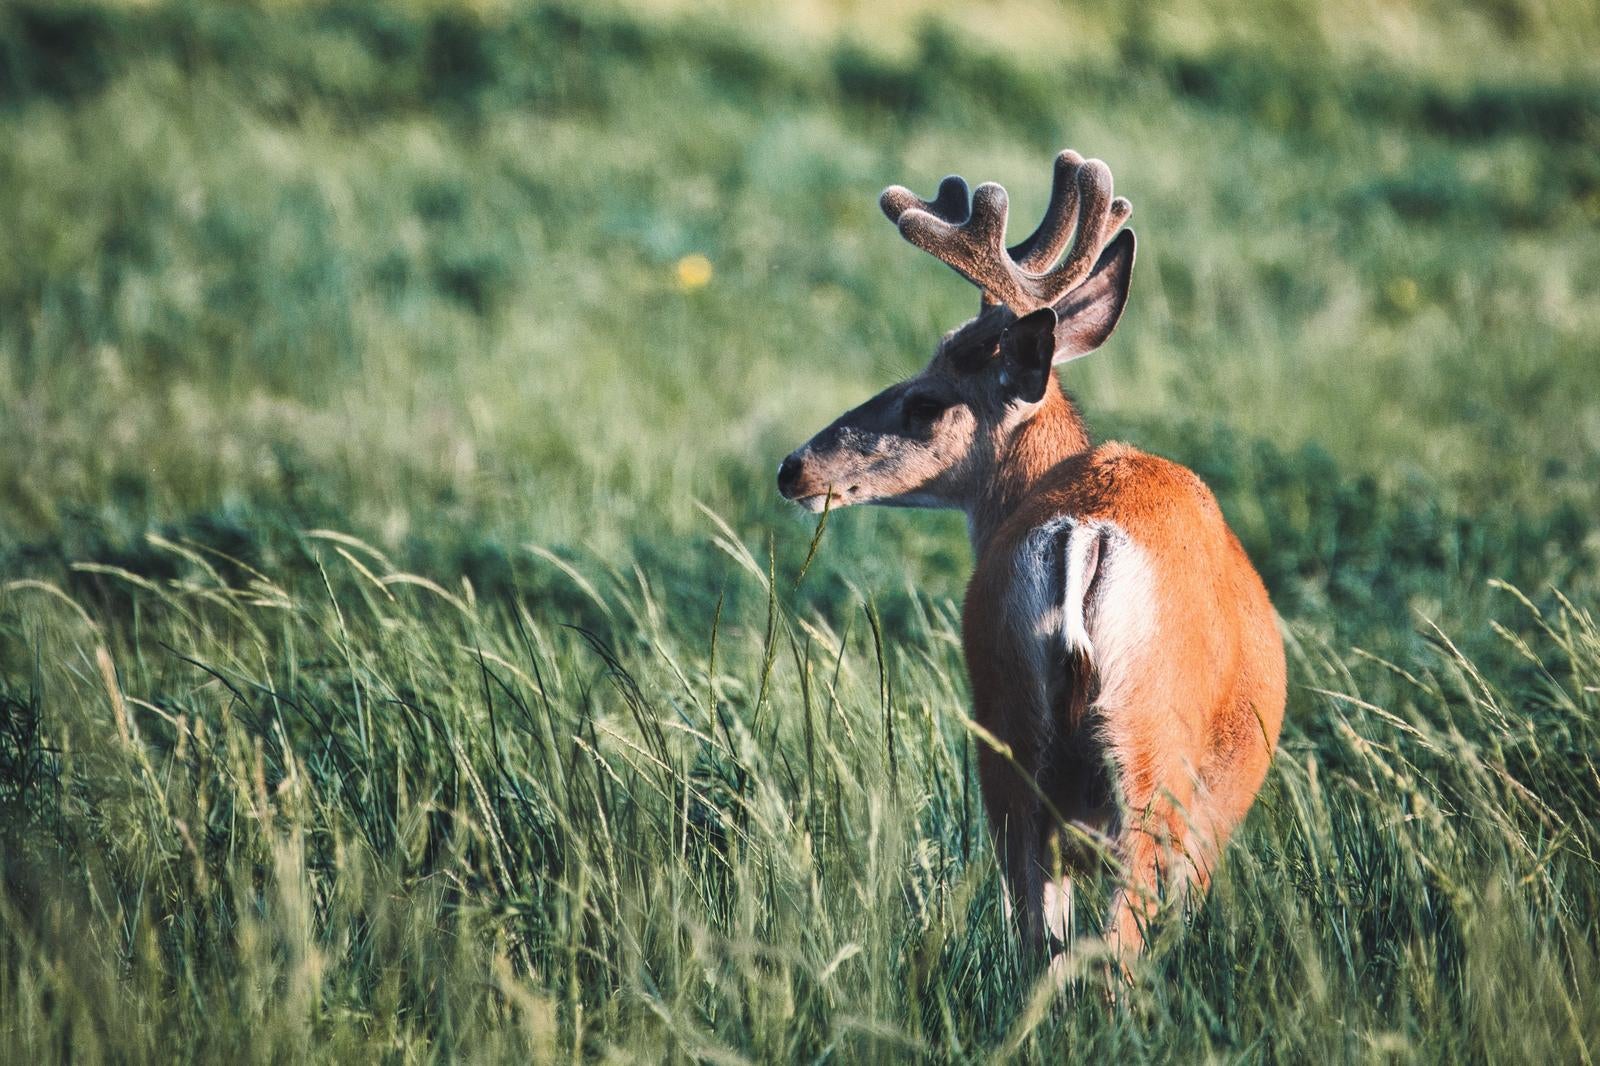 「野原を歩く鹿の後ろ姿」の写真